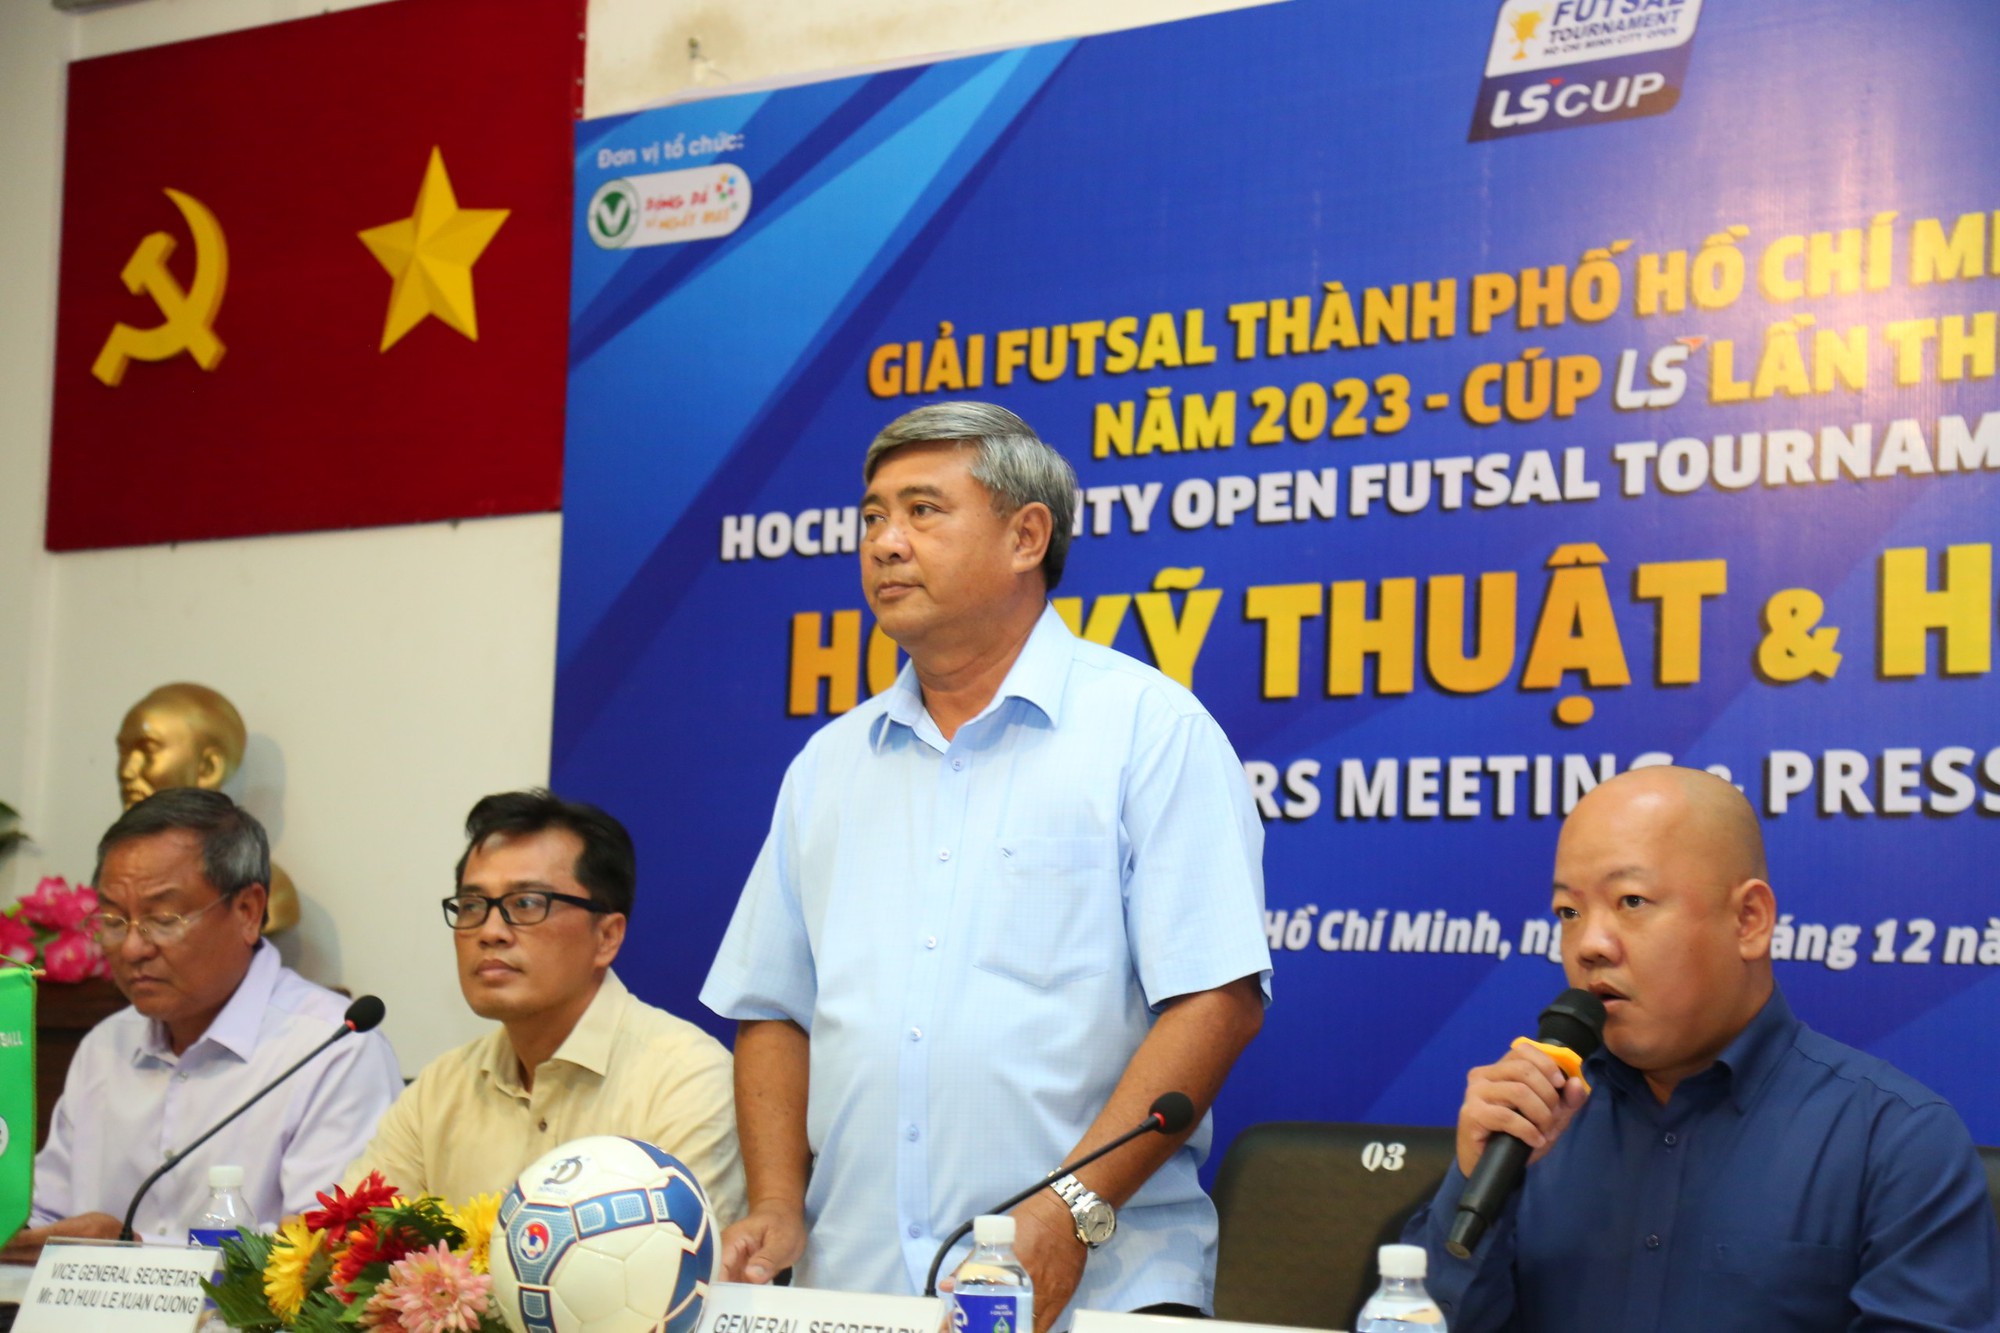 Tổng thư ký HFF Trần Đình Huấn chia sẻ ở buổi lễ công bố giải